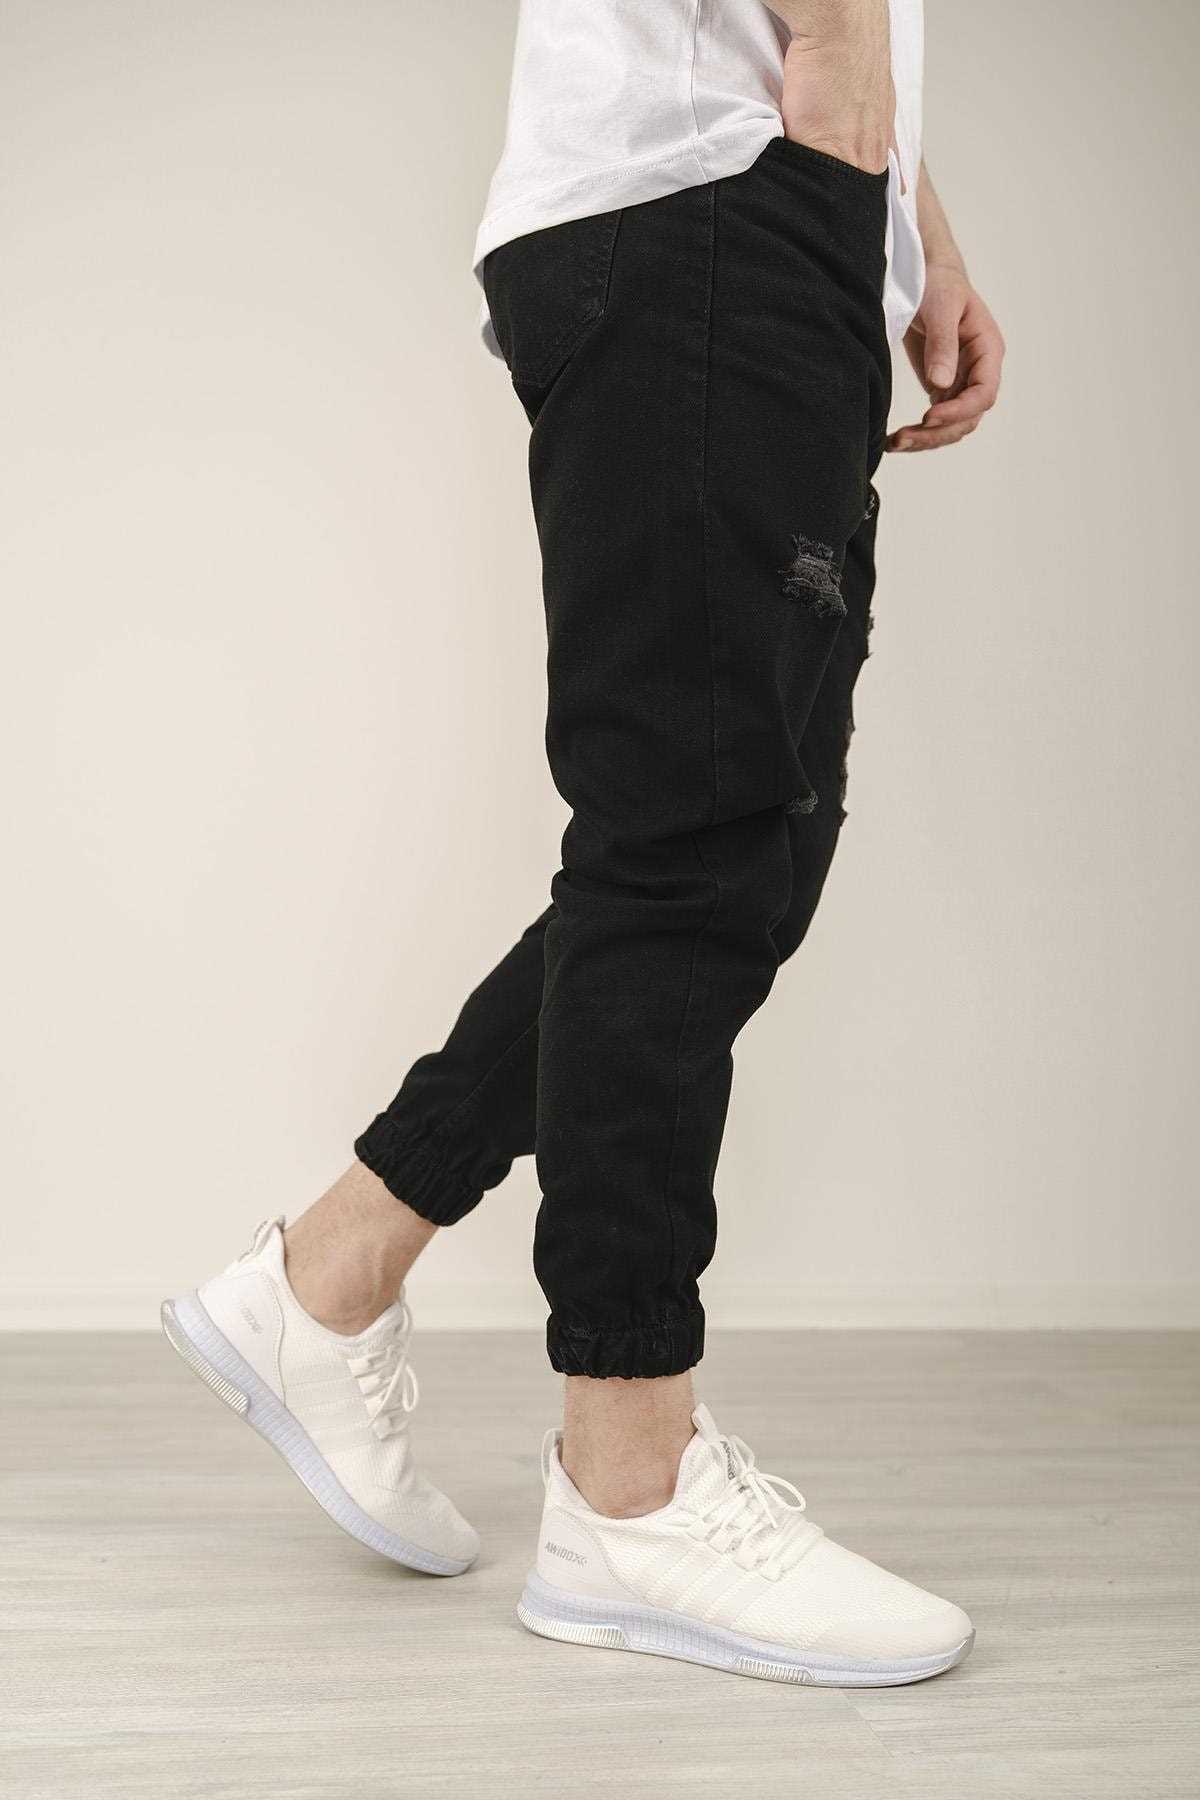 خرید انلاین شلوار جین زیبا مردانه برند Oksit رنگ مشکی کد ty113971585